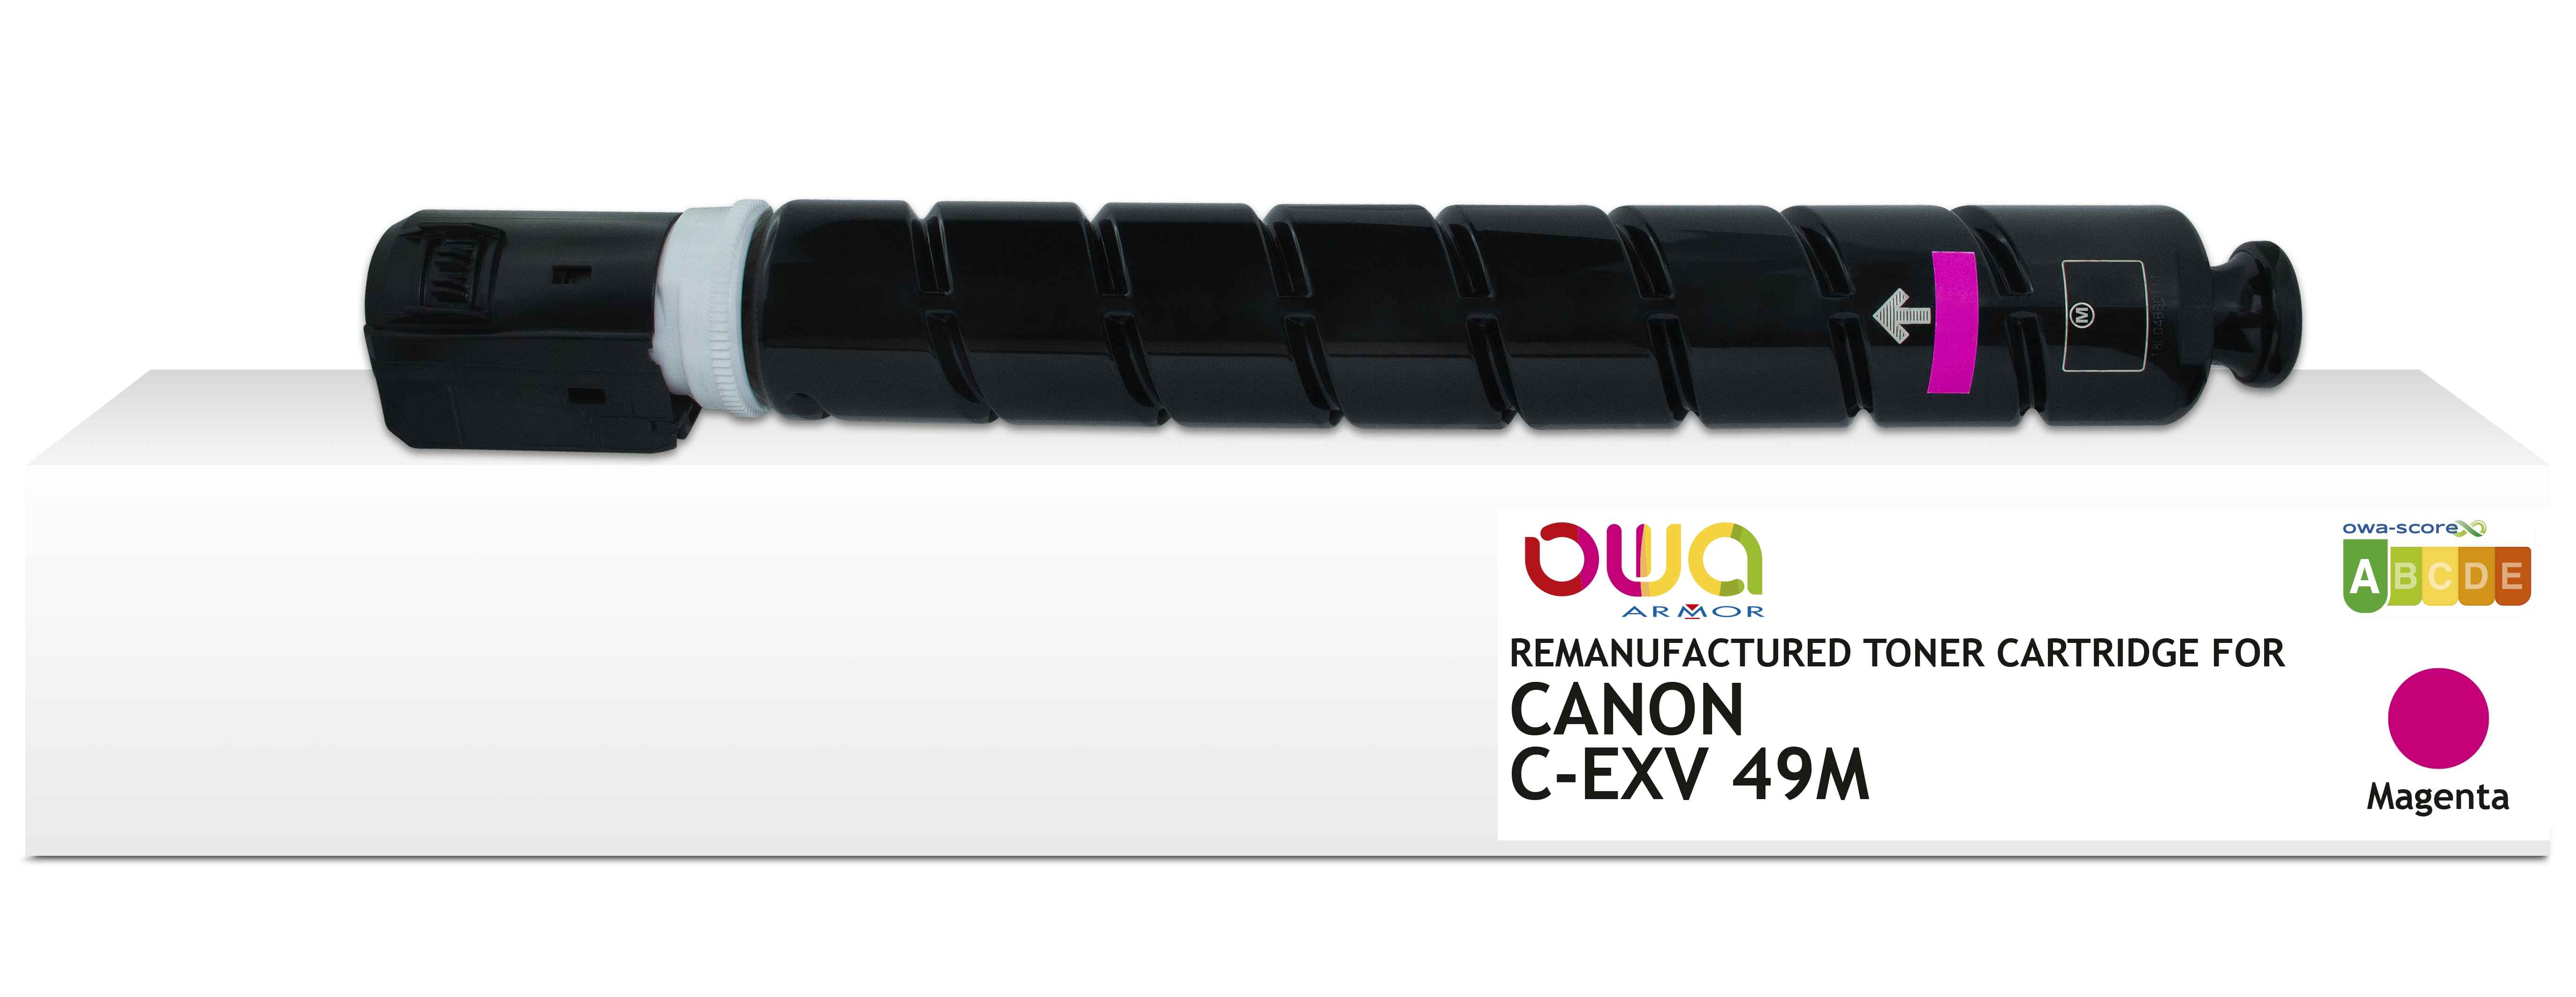 OWA Armor toner kompatibilní s Canon C-EXV49M, 19000st, červená/magent